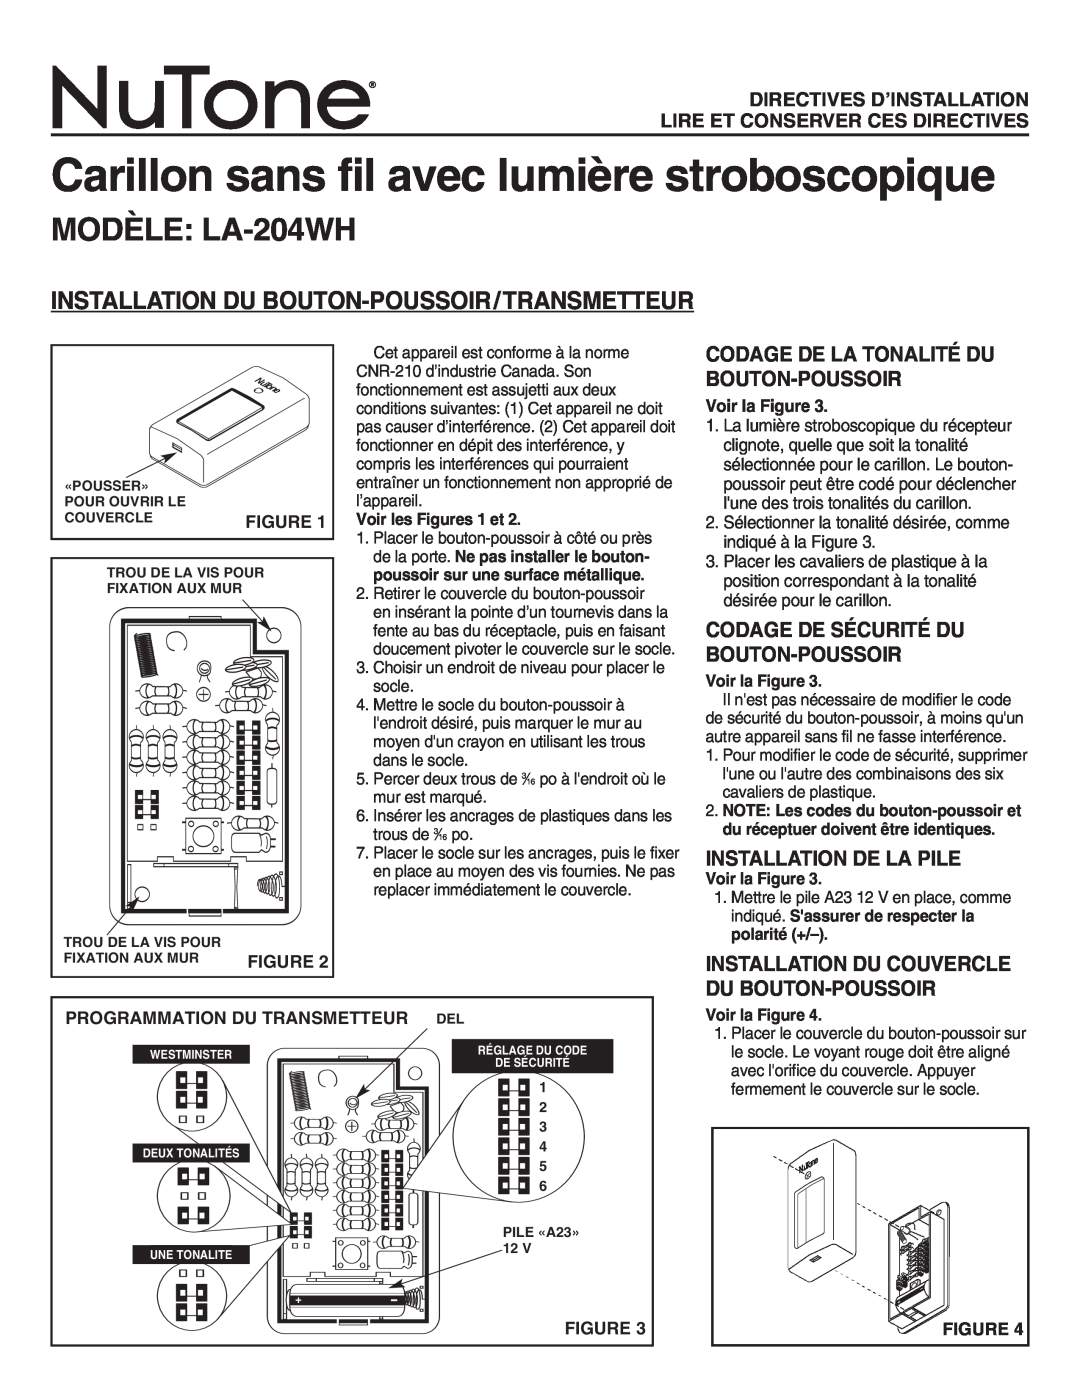 NuTone Carillon sans fil avec lumière stroboscopique, MODÈLE LA-204WH, Installation Du Bouton-Poussoir/Transmetteur 